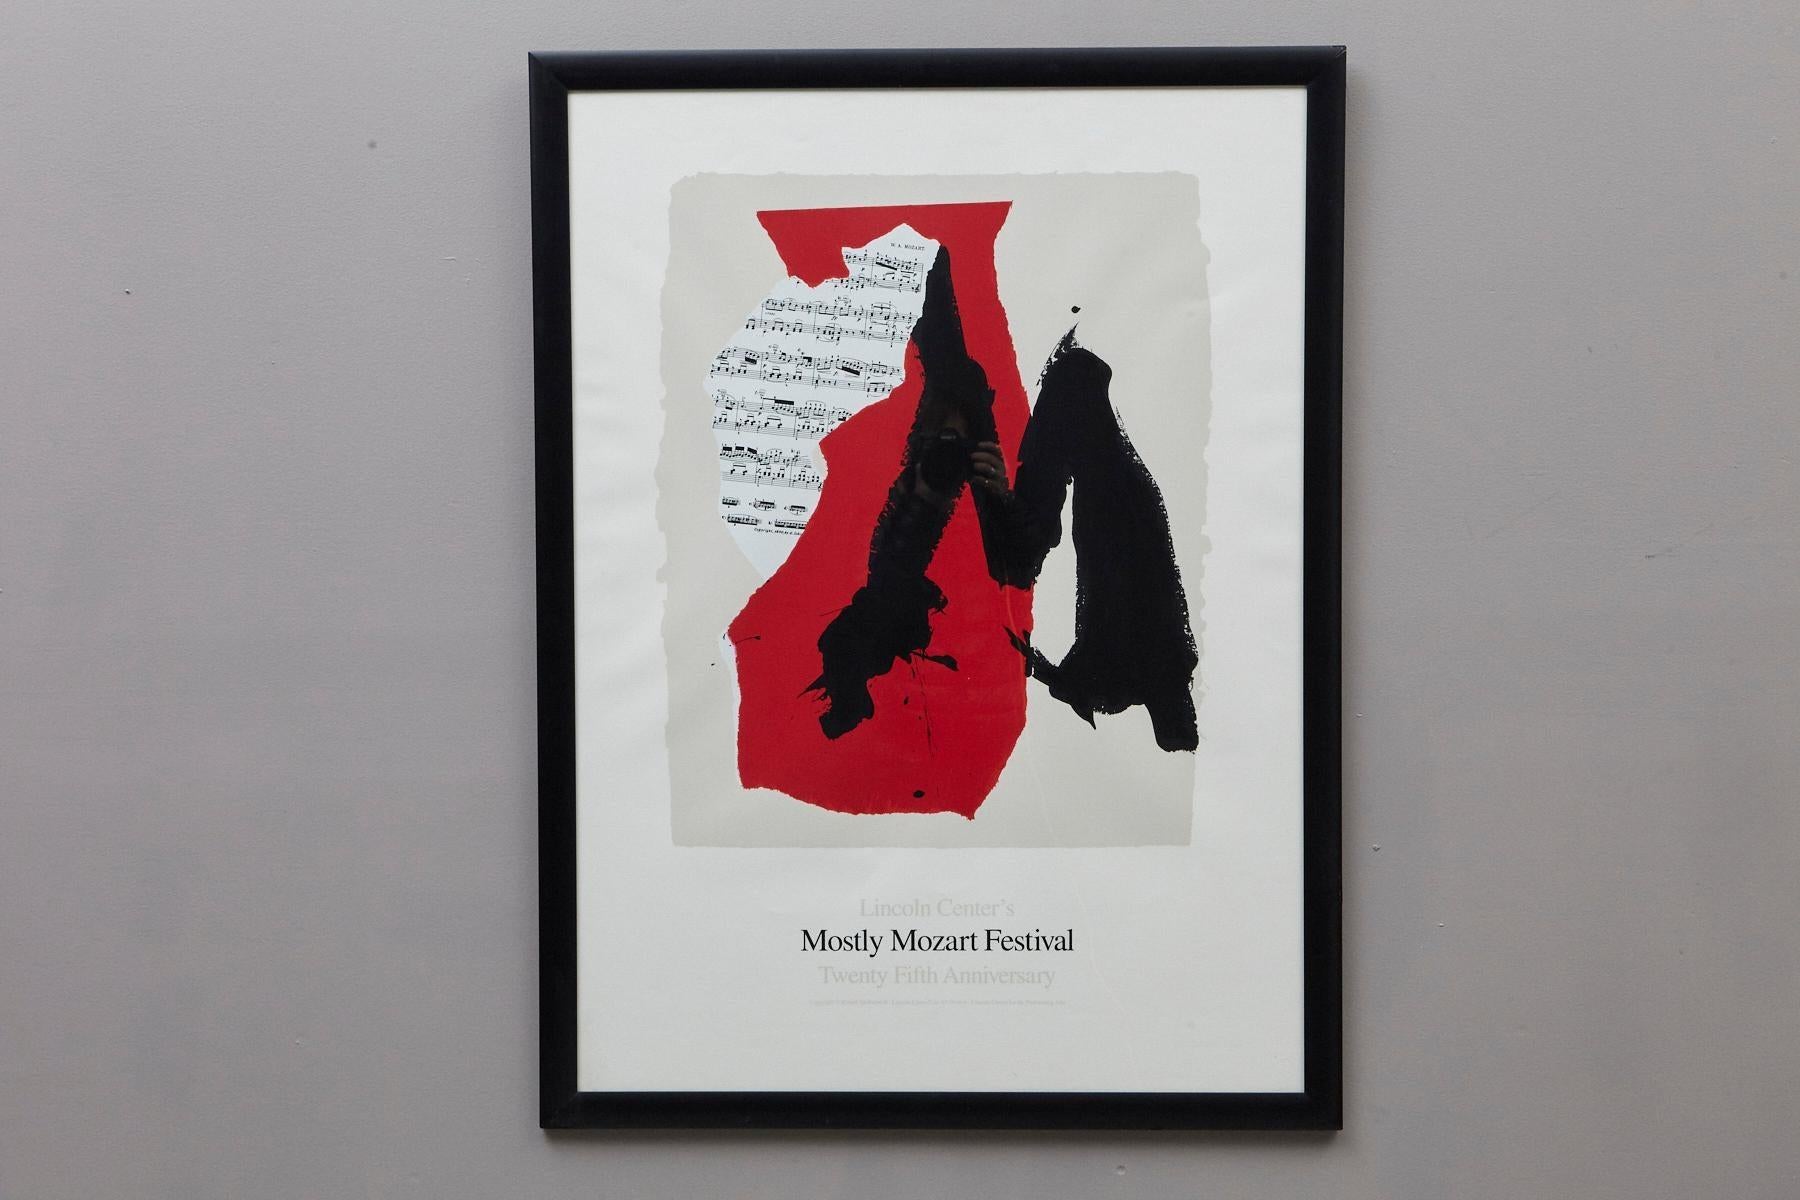 Das Mostly Mozart Festival des Lincoln Center – 25. Jahrestag des Lincoln Center (Abstrakter Expressionismus), Print, von Robert Motherwell